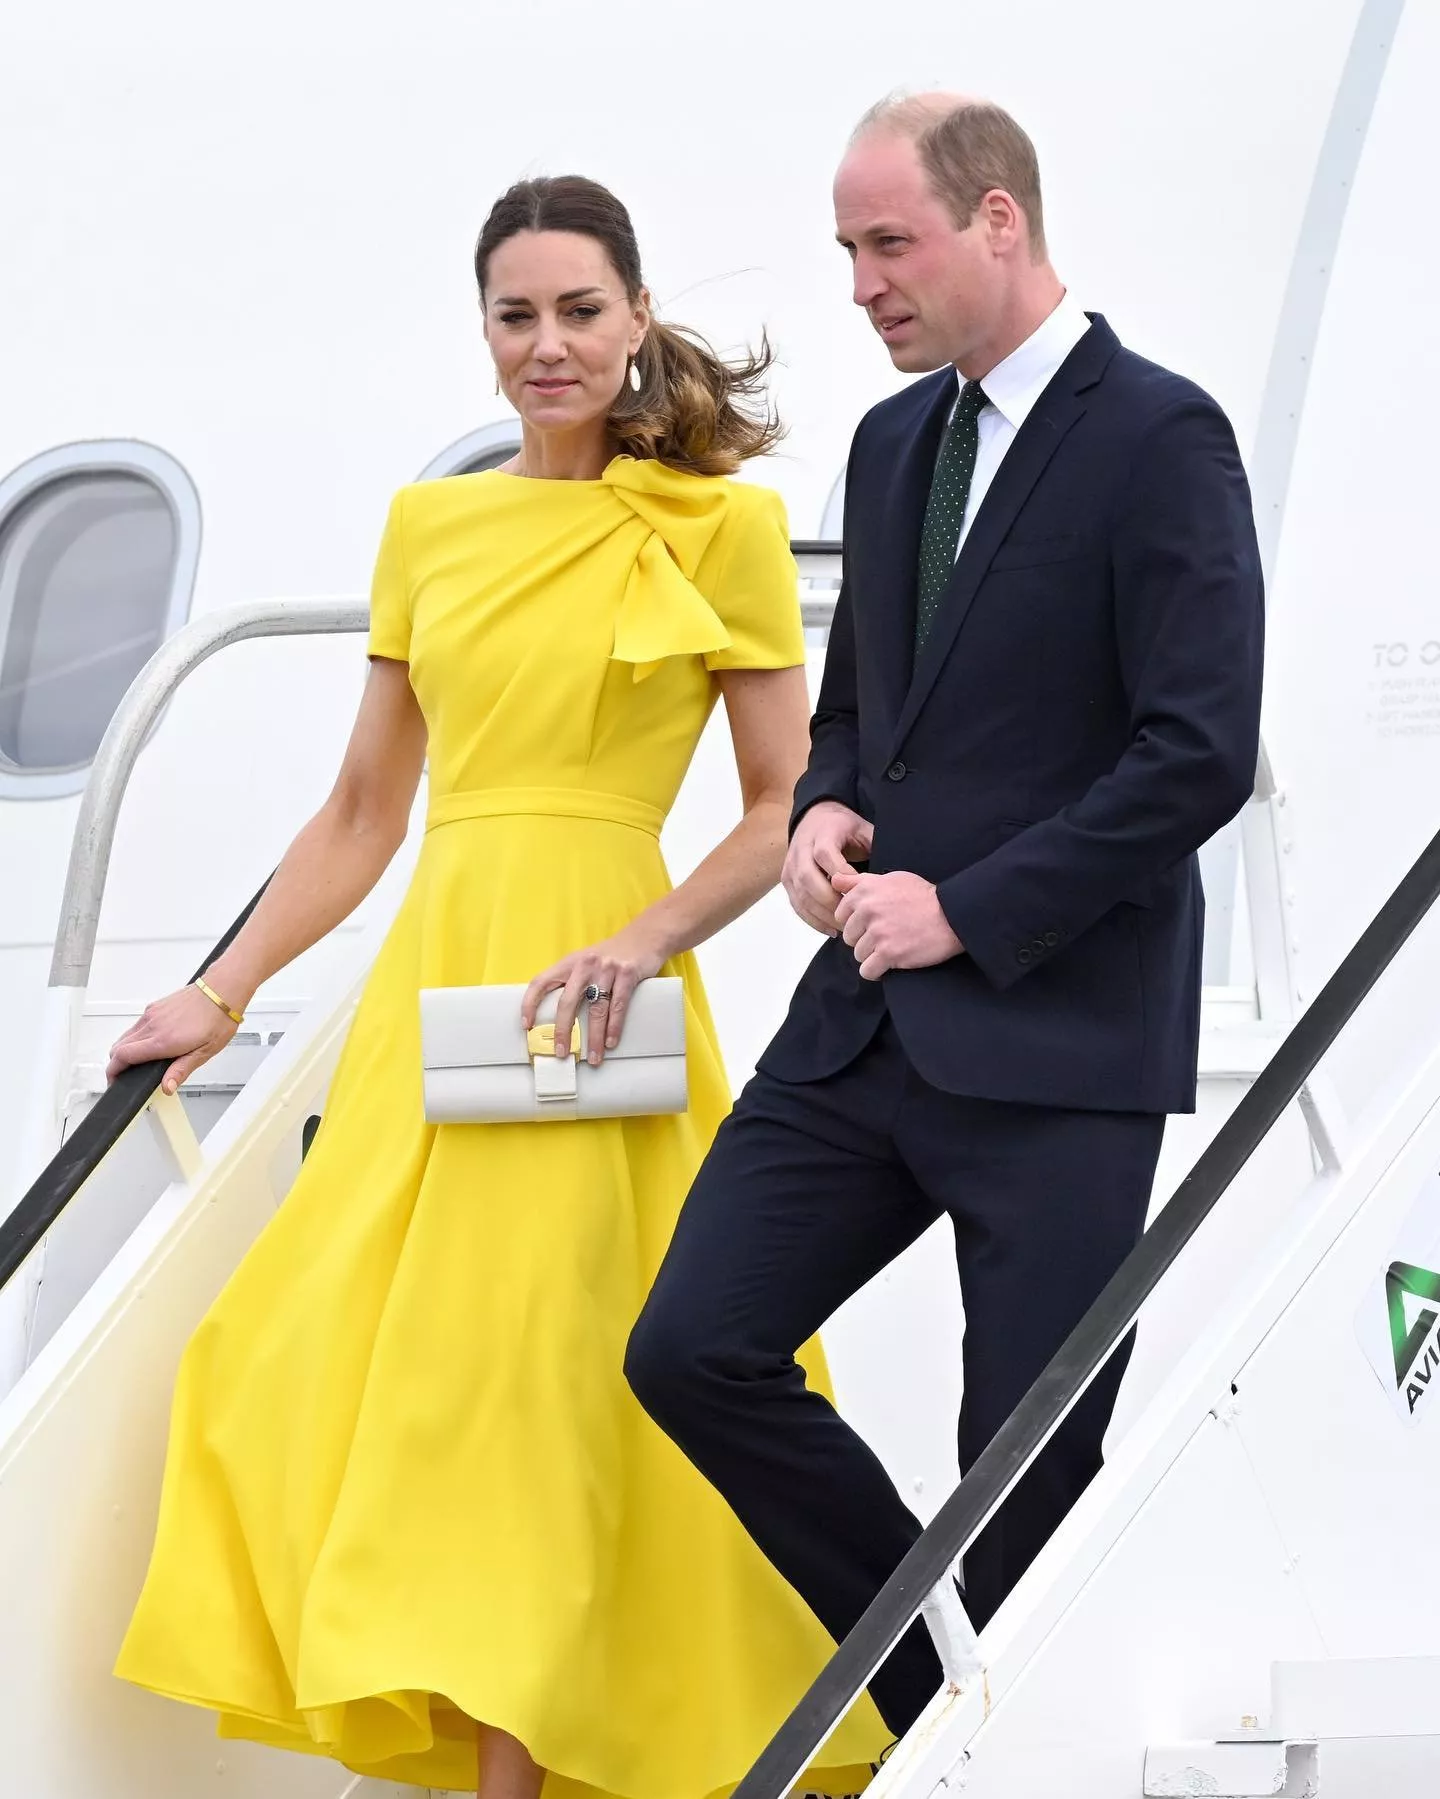 كيت ميدلتون بفستان أصفر مع الامير ويليام في جامايكا 